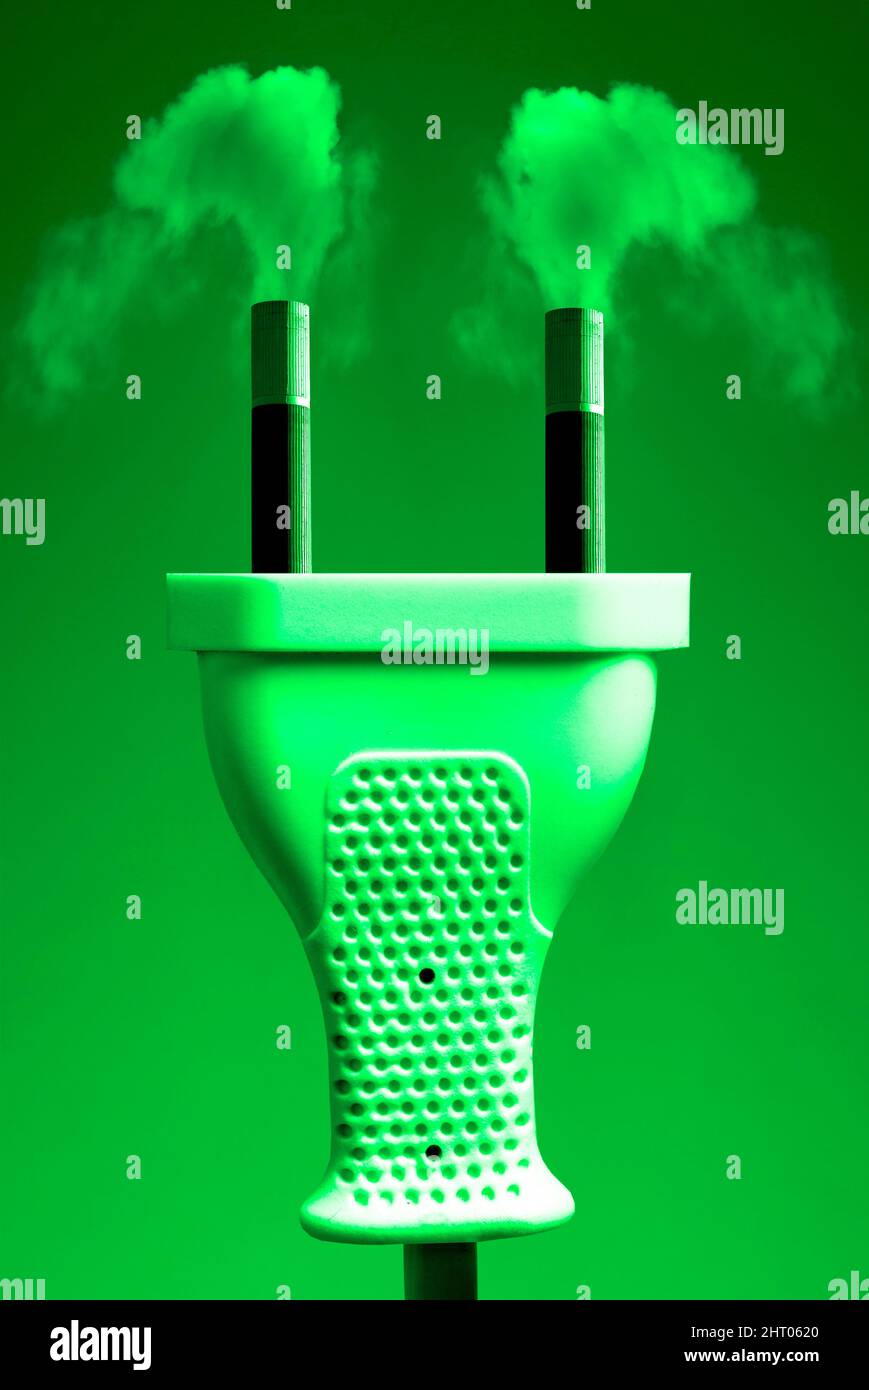 Electricidad verde, imagen conceptual Foto de stock